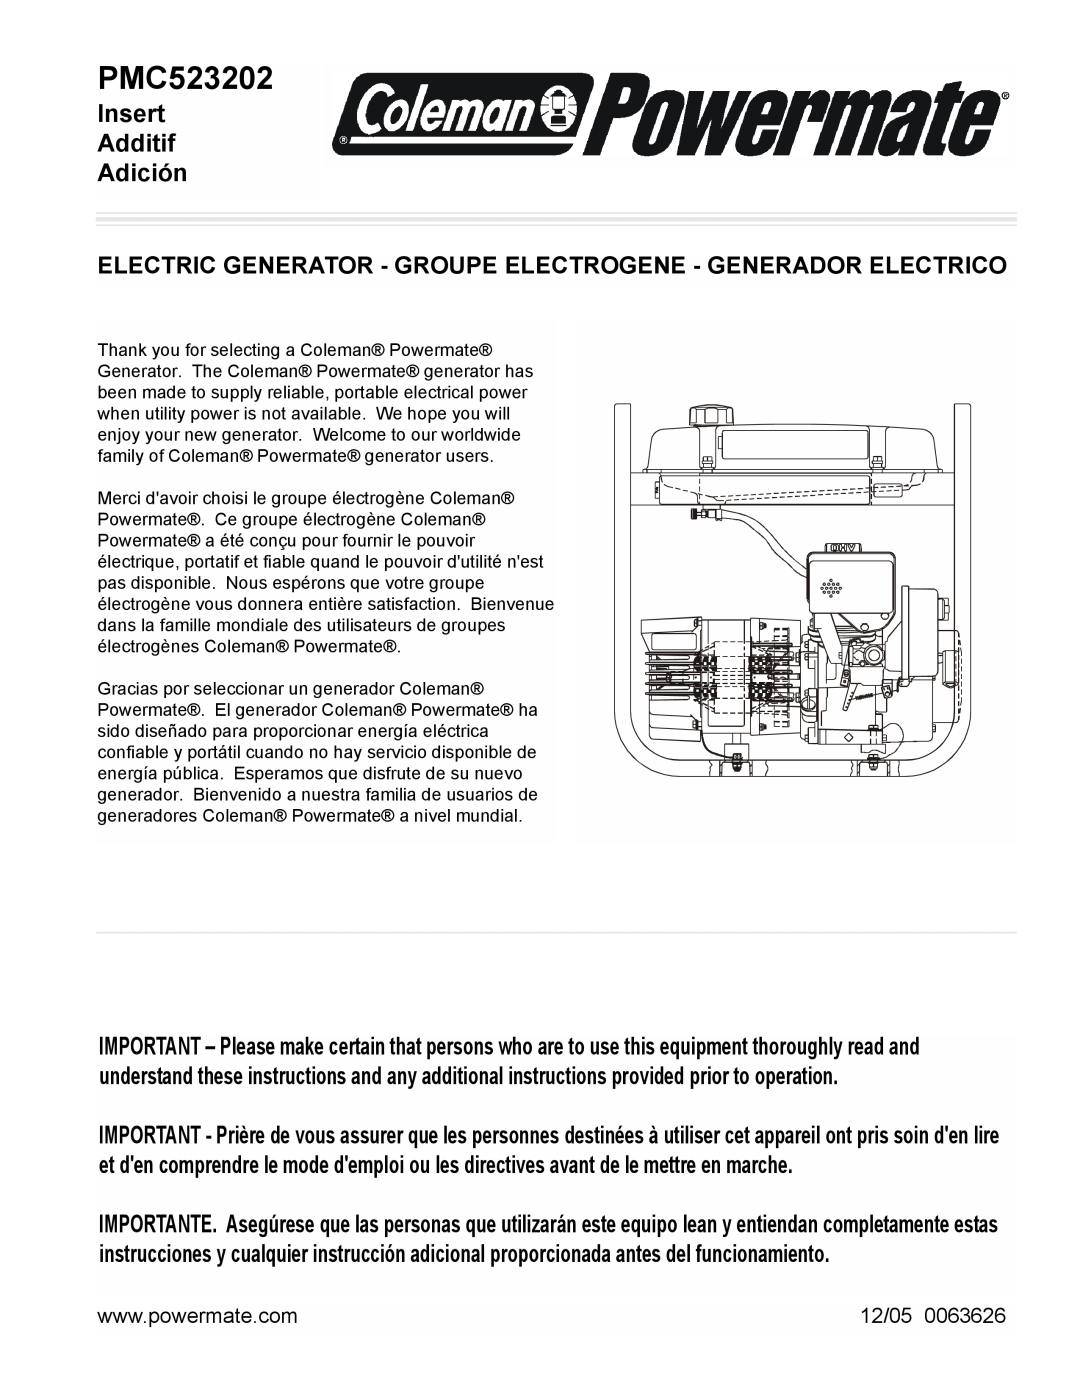 Powermate PMC523202 manual Insert Additif Adición, 12/05 